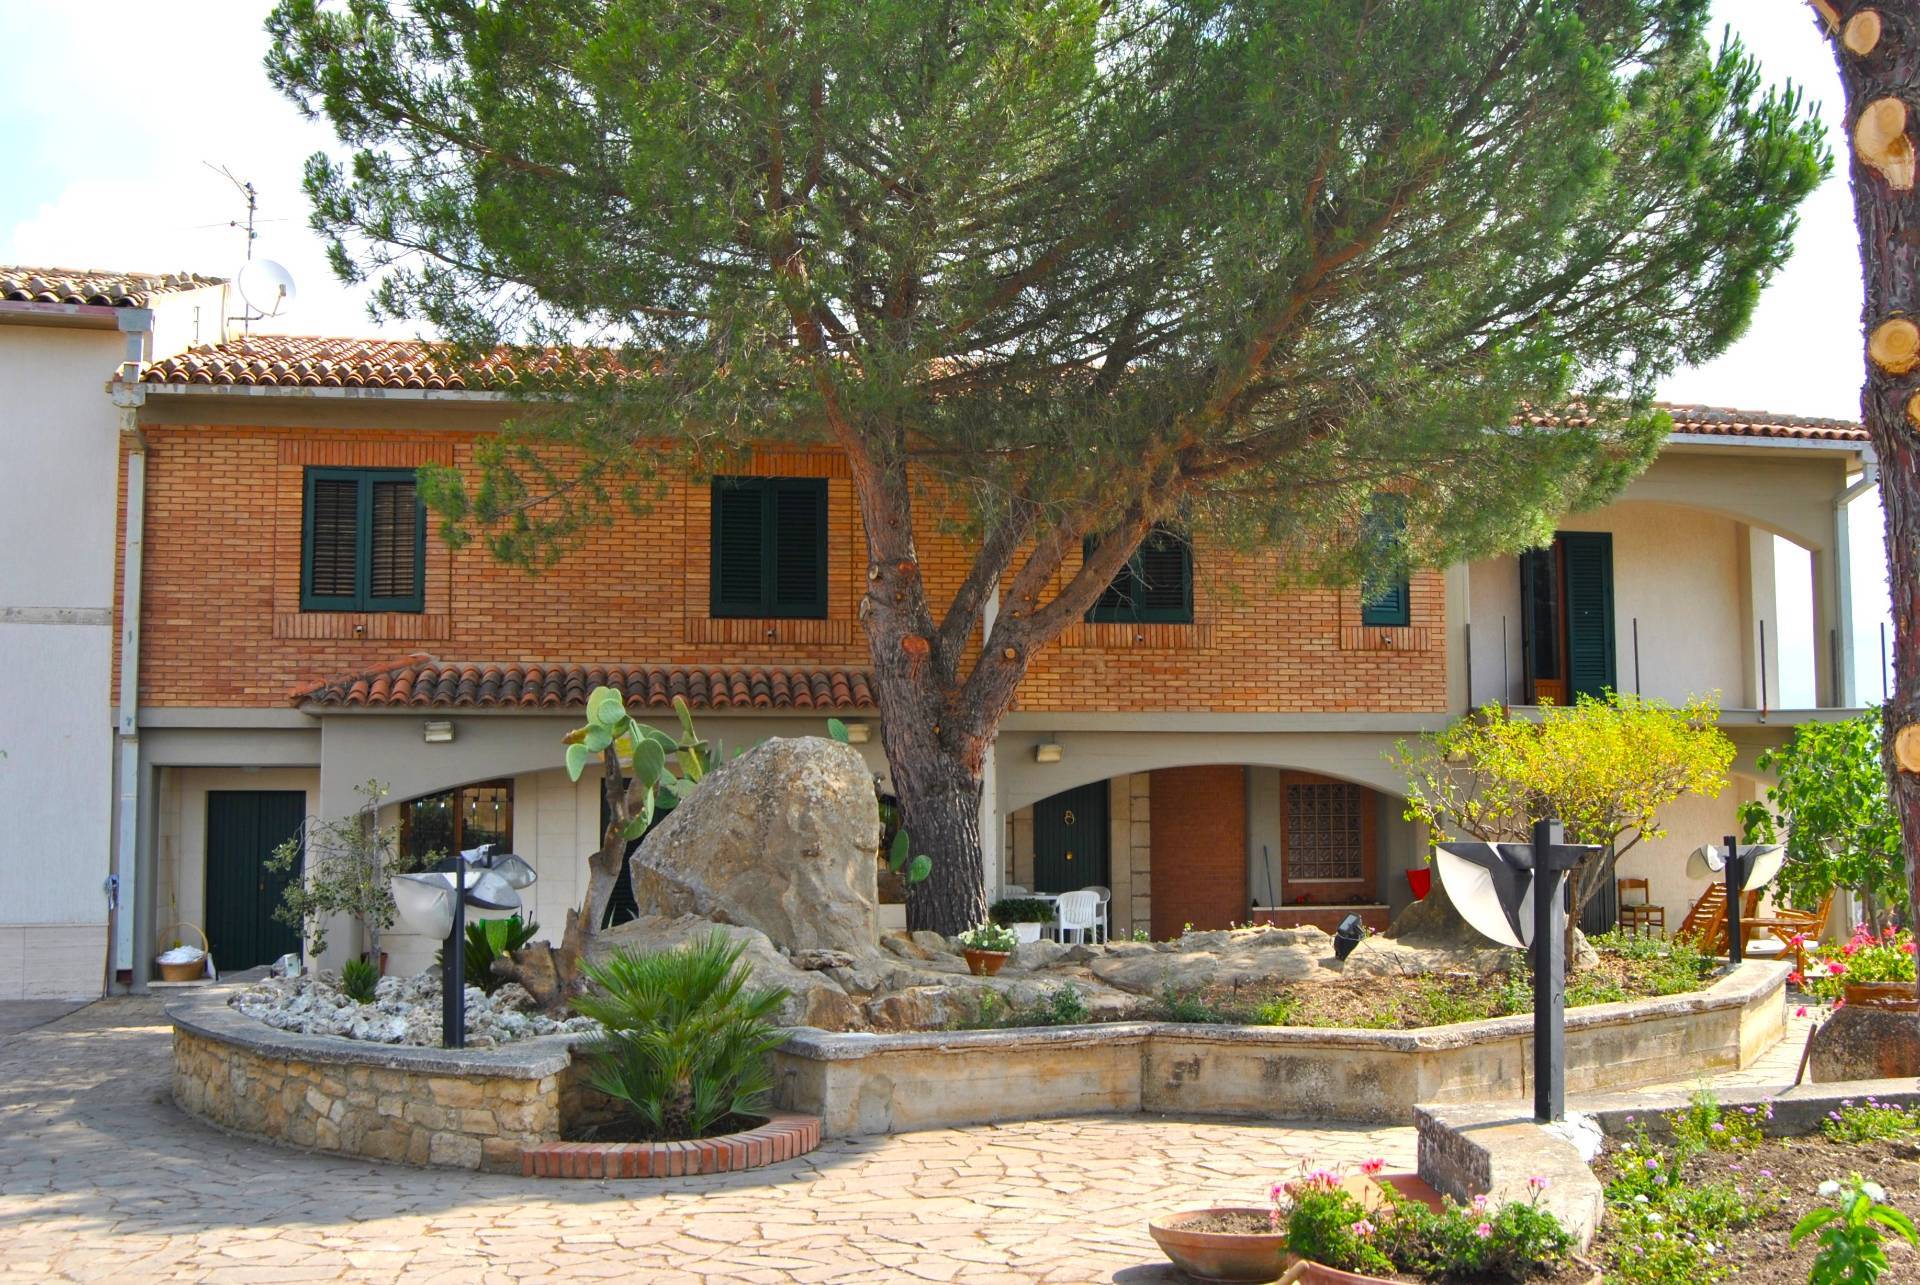 Villa in affitto Palermo